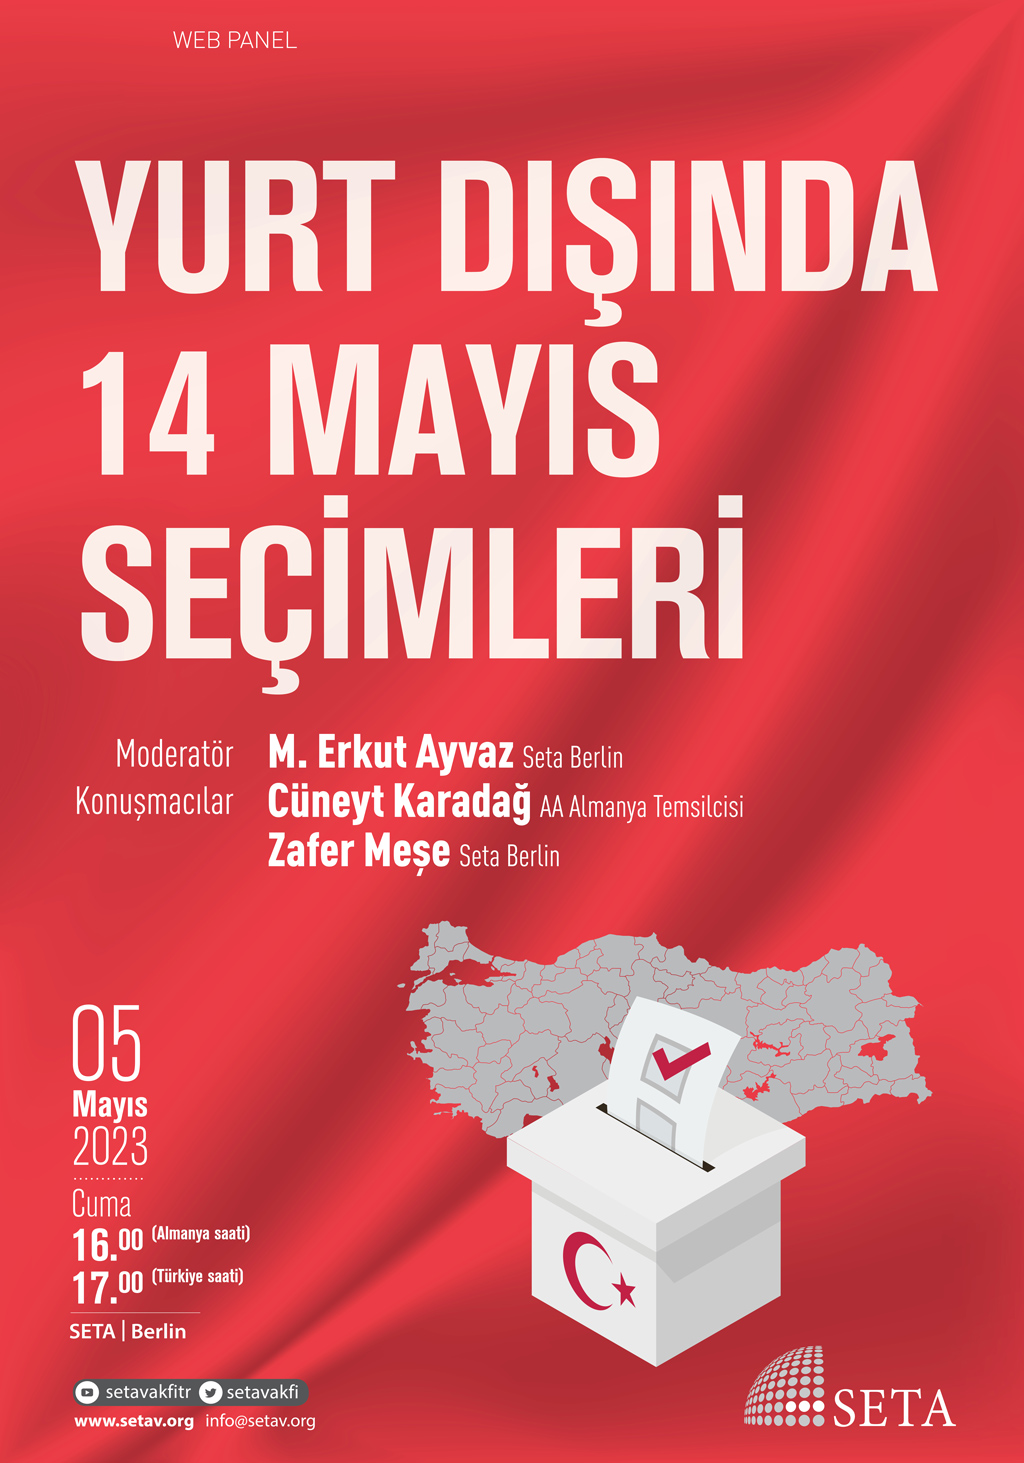 Web Panel: Yurt Dışında 14 Mayıs Seçimleri